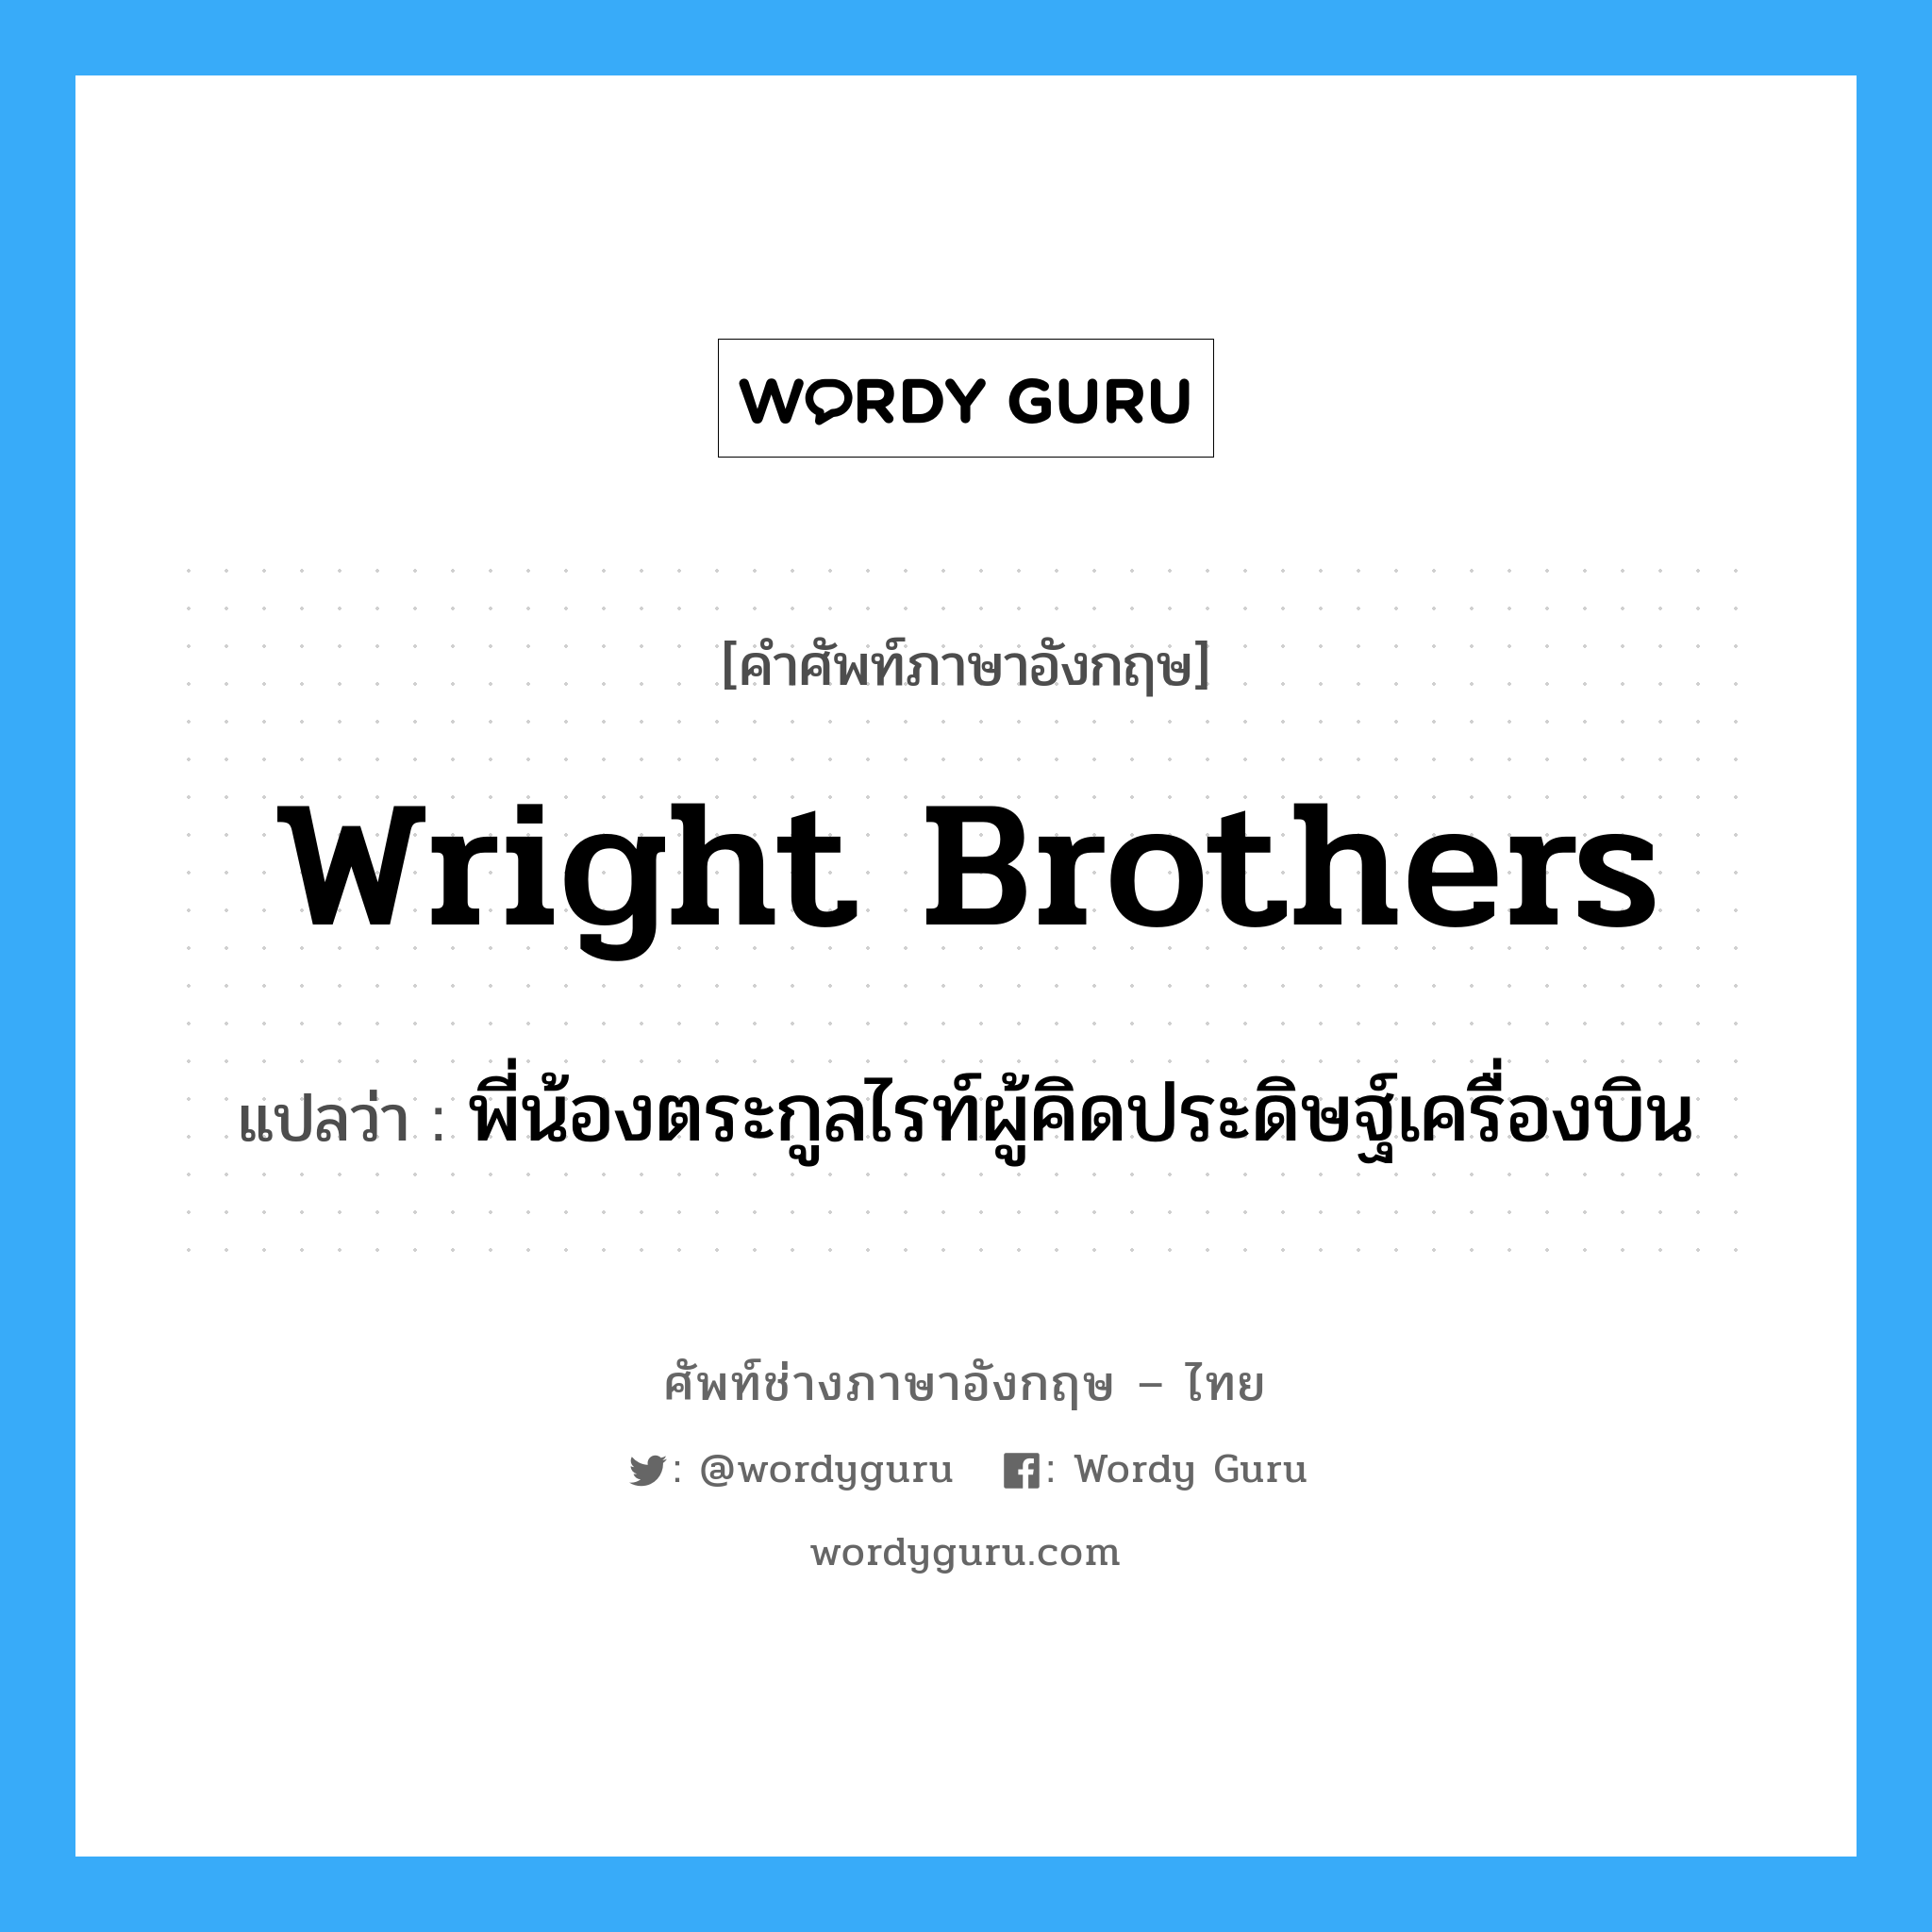 Wright brothers แปลว่า?, คำศัพท์ช่างภาษาอังกฤษ - ไทย Wright brothers คำศัพท์ภาษาอังกฤษ Wright brothers แปลว่า พี่น้องตระกูลไรท์ผู้คิดประดิษฐ์เครื่องบิน